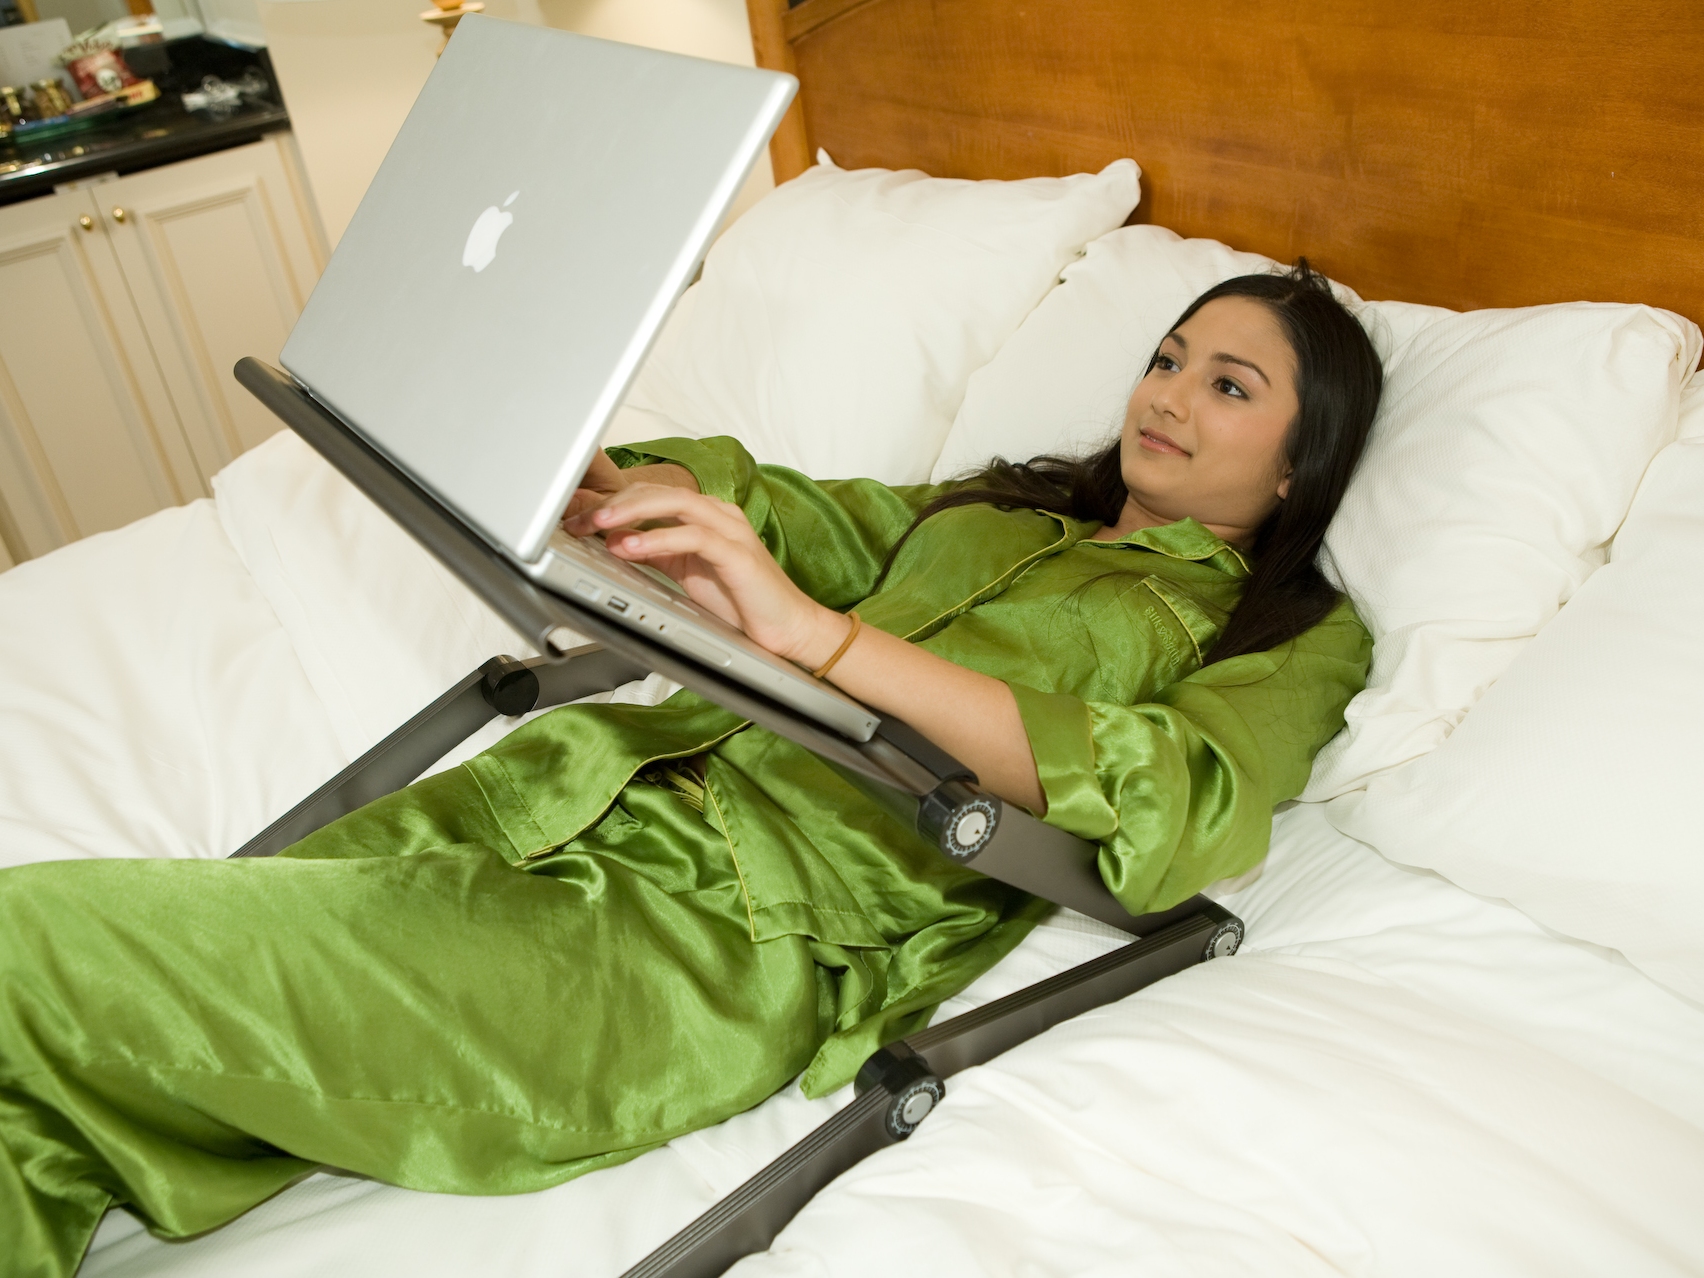 Sử dụng laptop trên giường sẽ khiến cho tuổi thọ của máy tính giảm nghiêm trọng